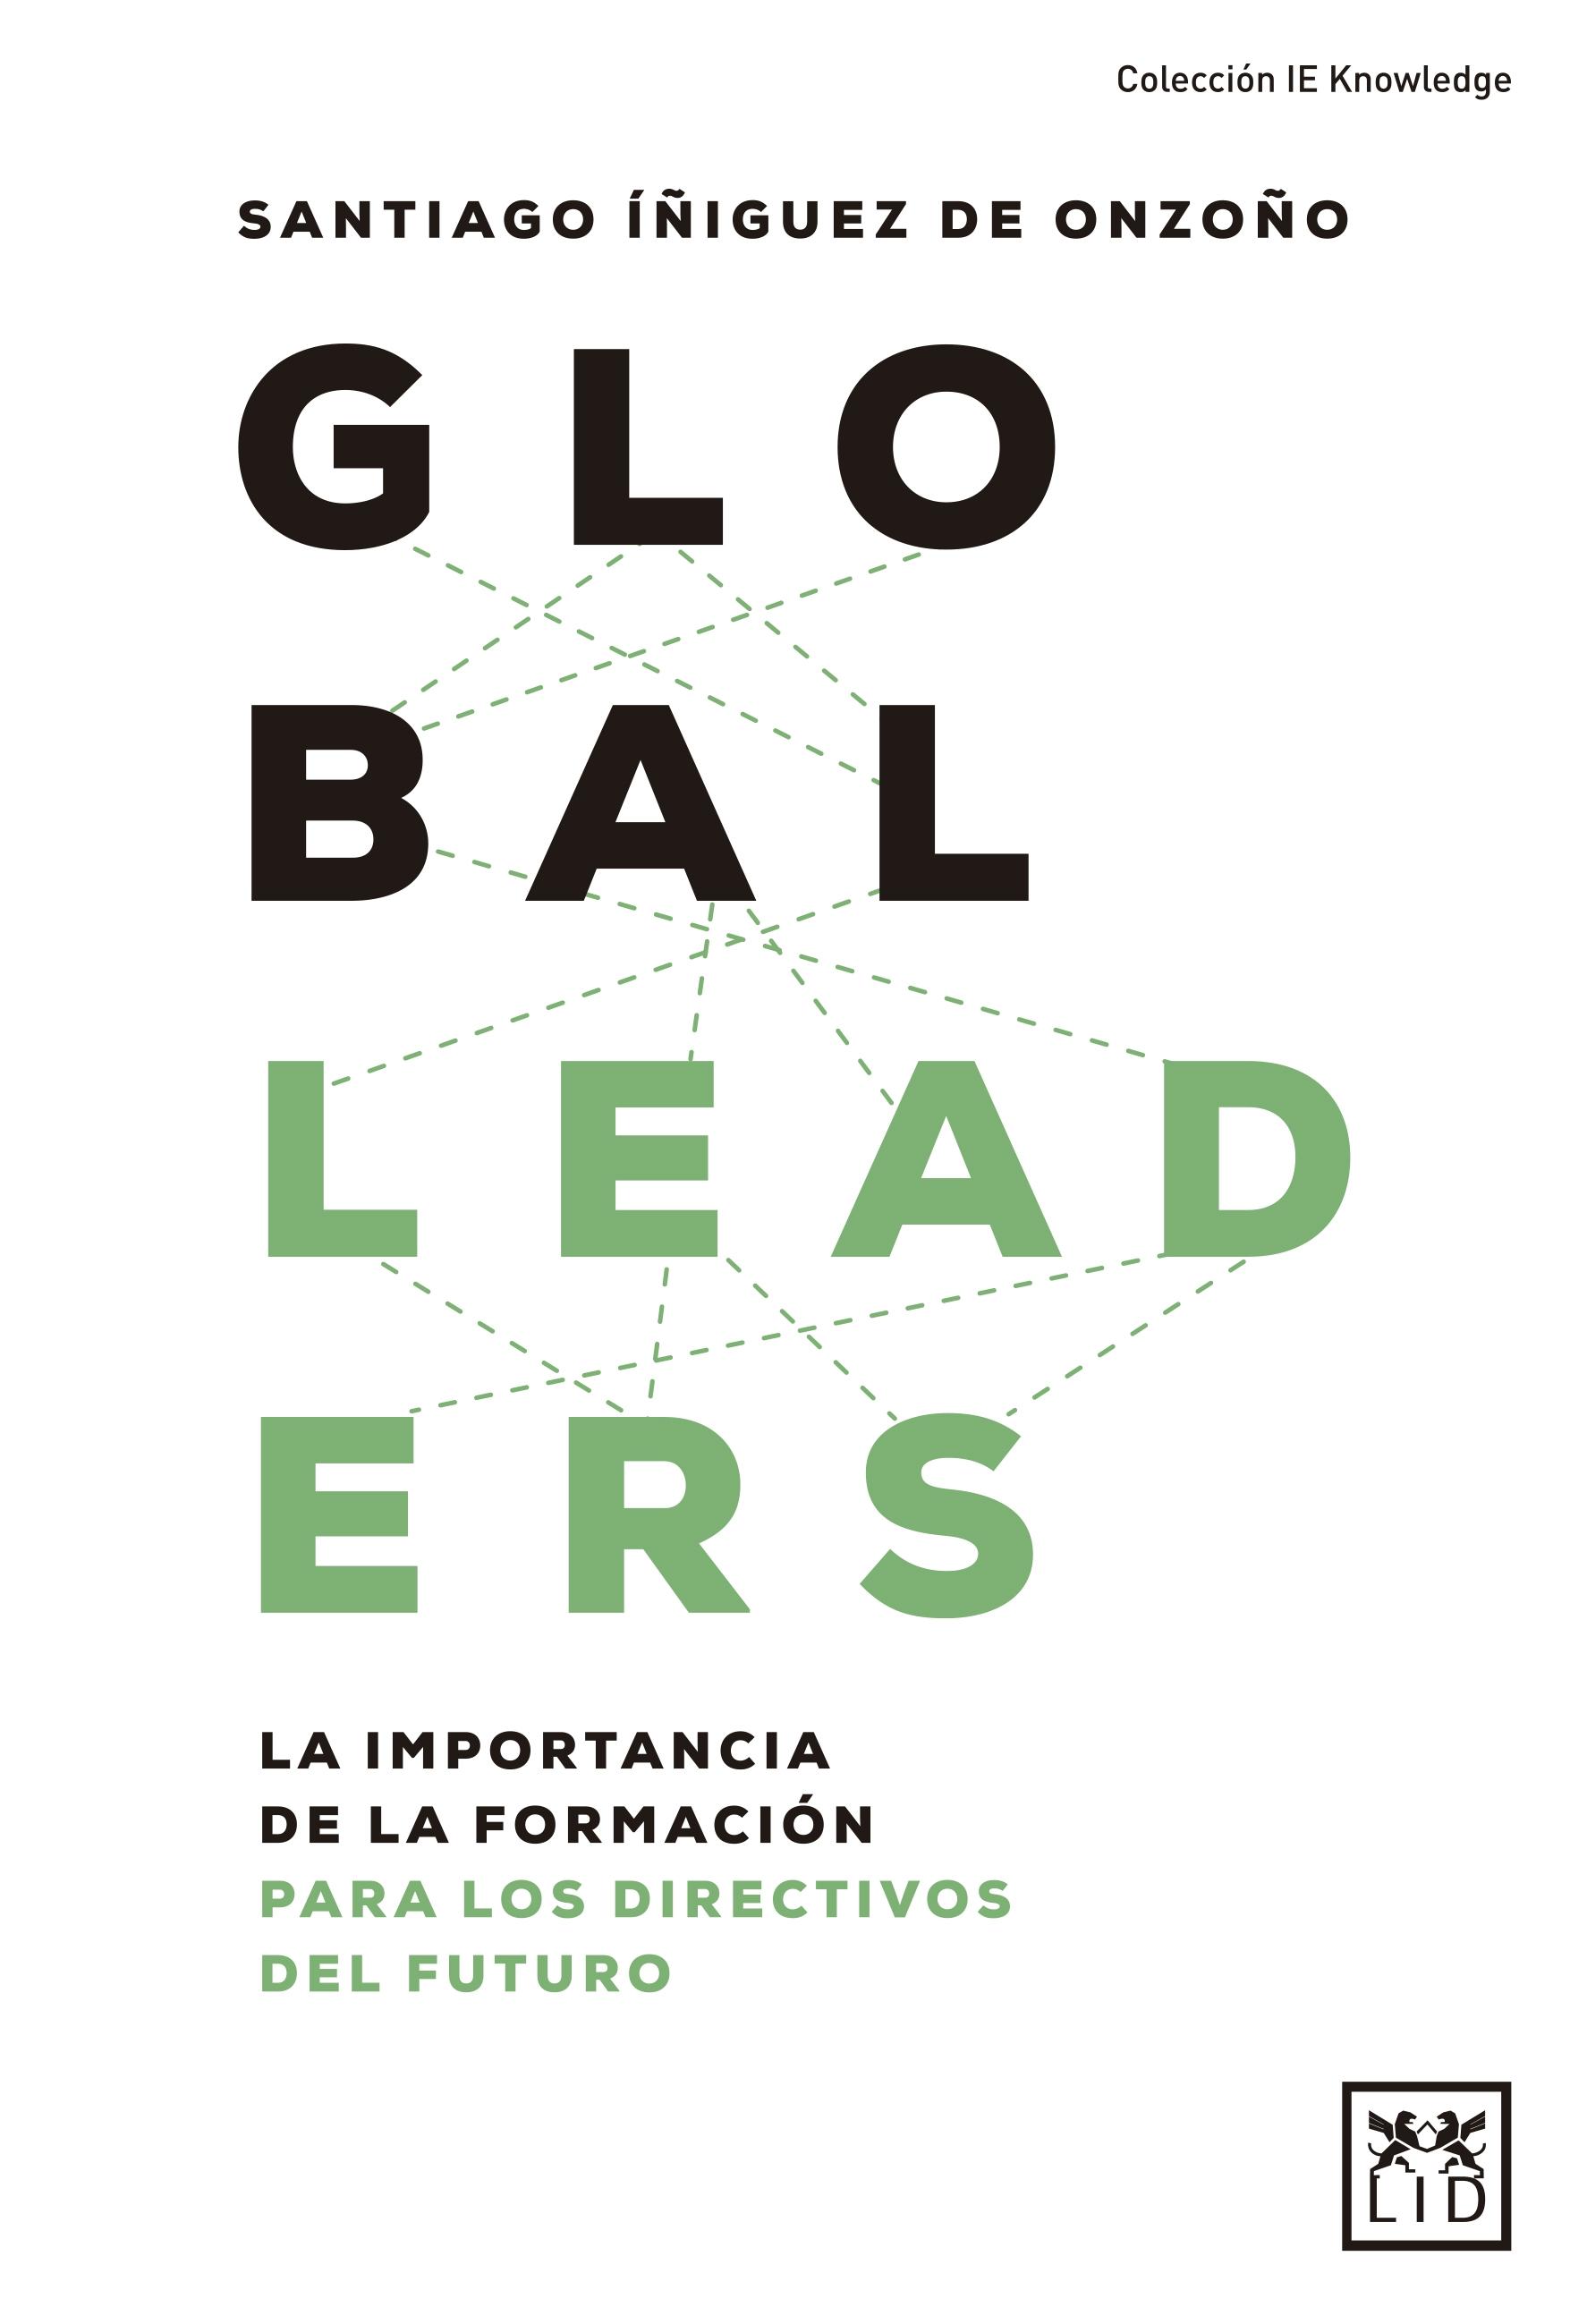 Global Leaders "La importancia de la formación para los directivos del futuro"